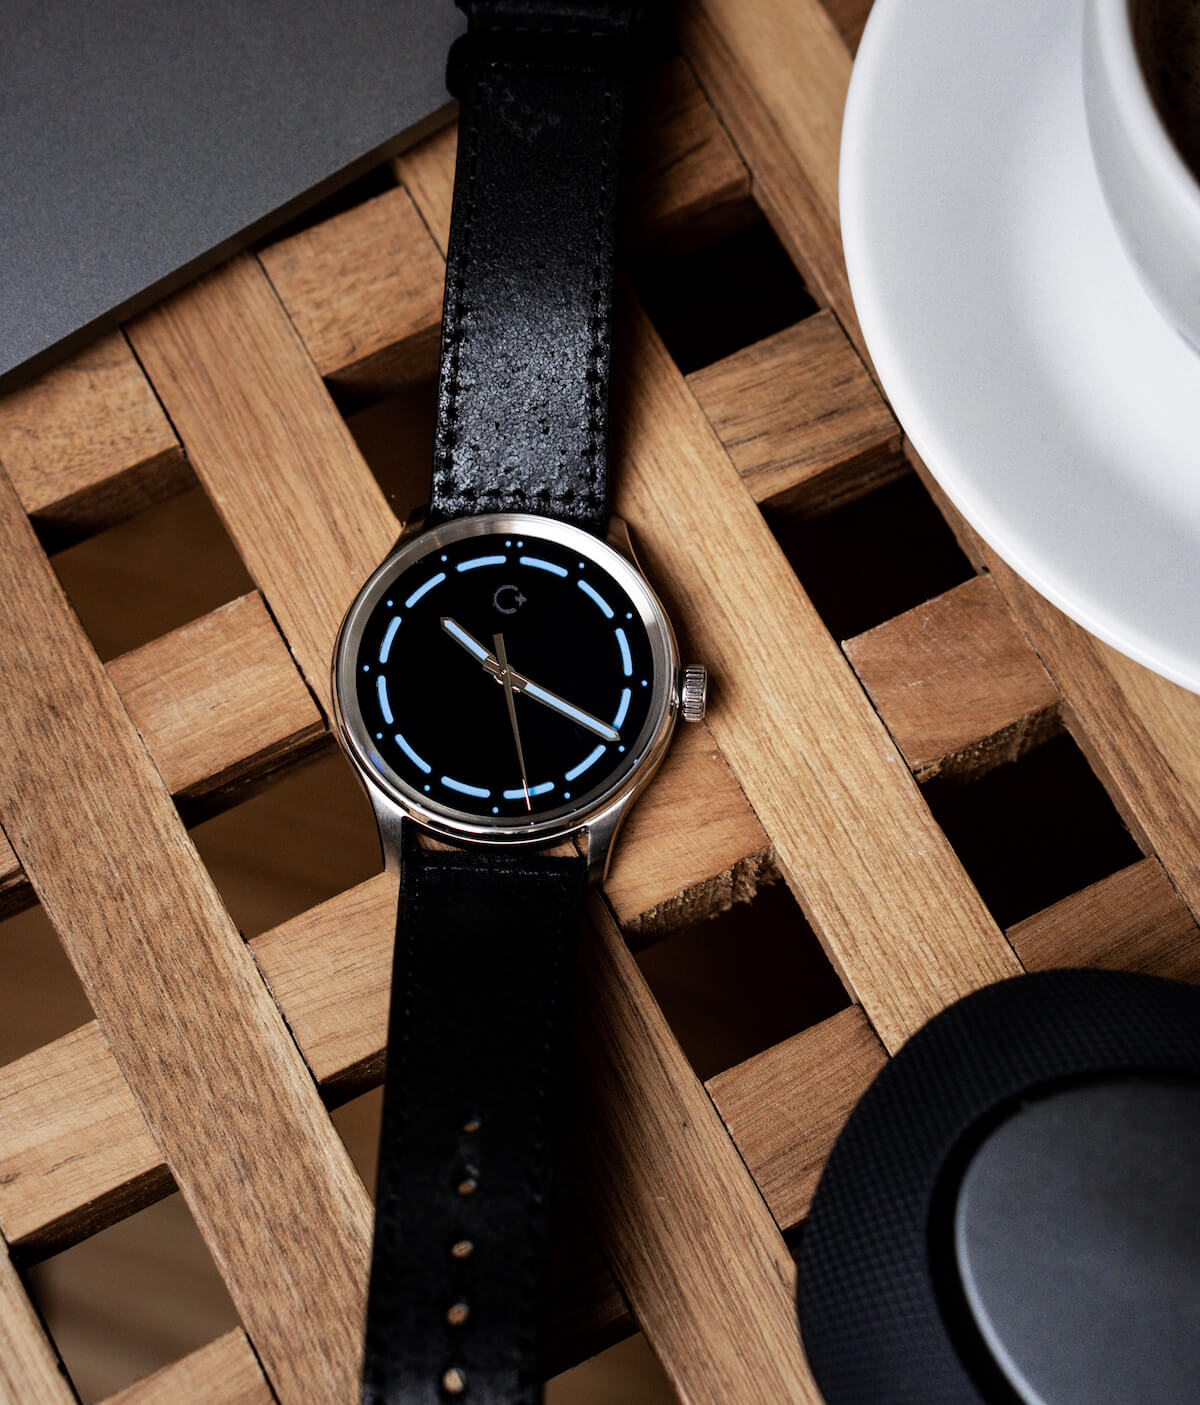 NanoBlack watch from Chronotechna, super black watch face, elegant designer swiss watch, černé pánské hodinky, elegantní hodinky pro muže